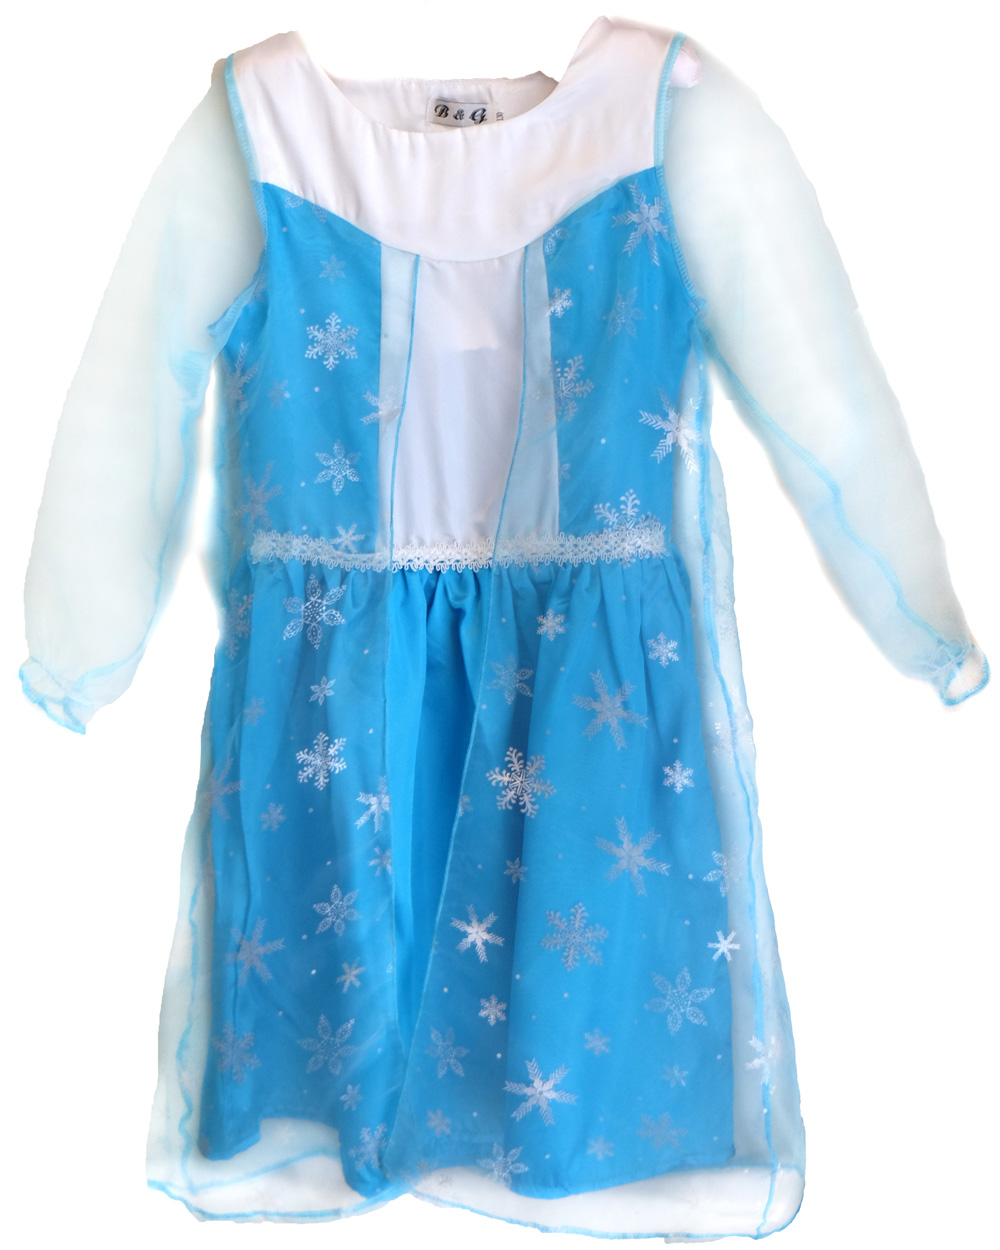 CFR Frozen Princess Anna Elsa Queen Dress Child Toddler Girls Book Week Costume